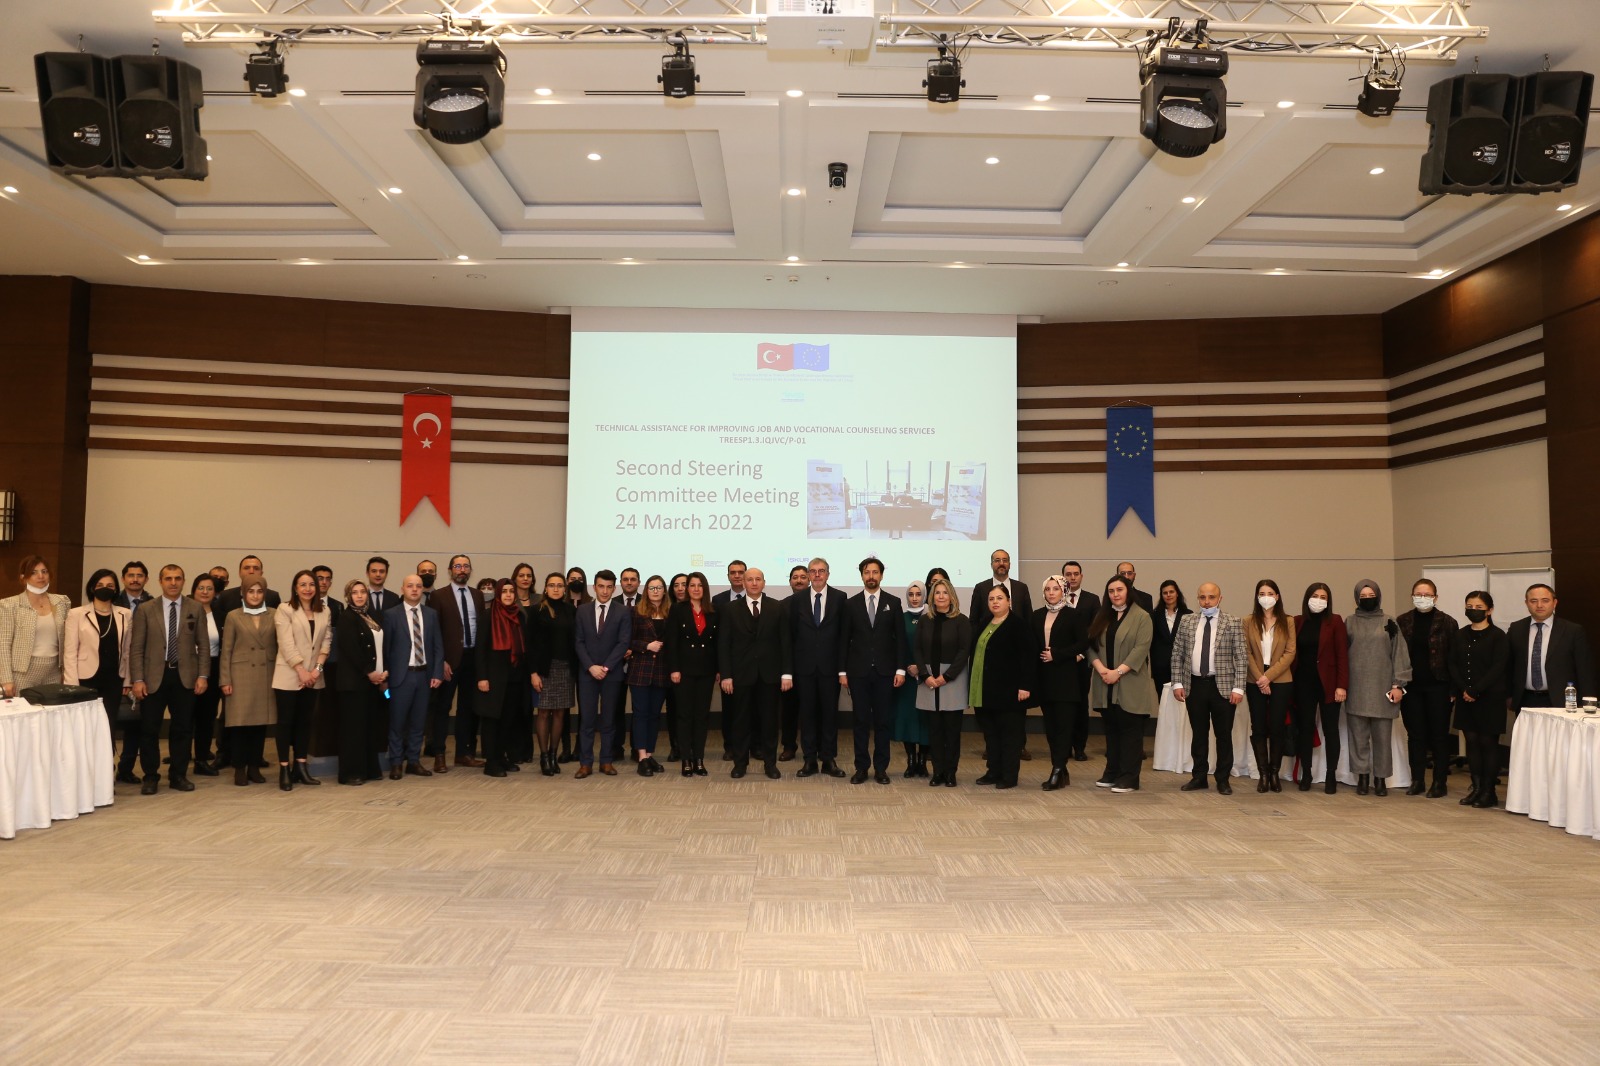 İş ve Meslek Danışmanlığı Hizmetlerinin Geliştirilmesi Projesi 2. Yönlendirme Komitesi Toplantısı Ankara’da Yapıldı